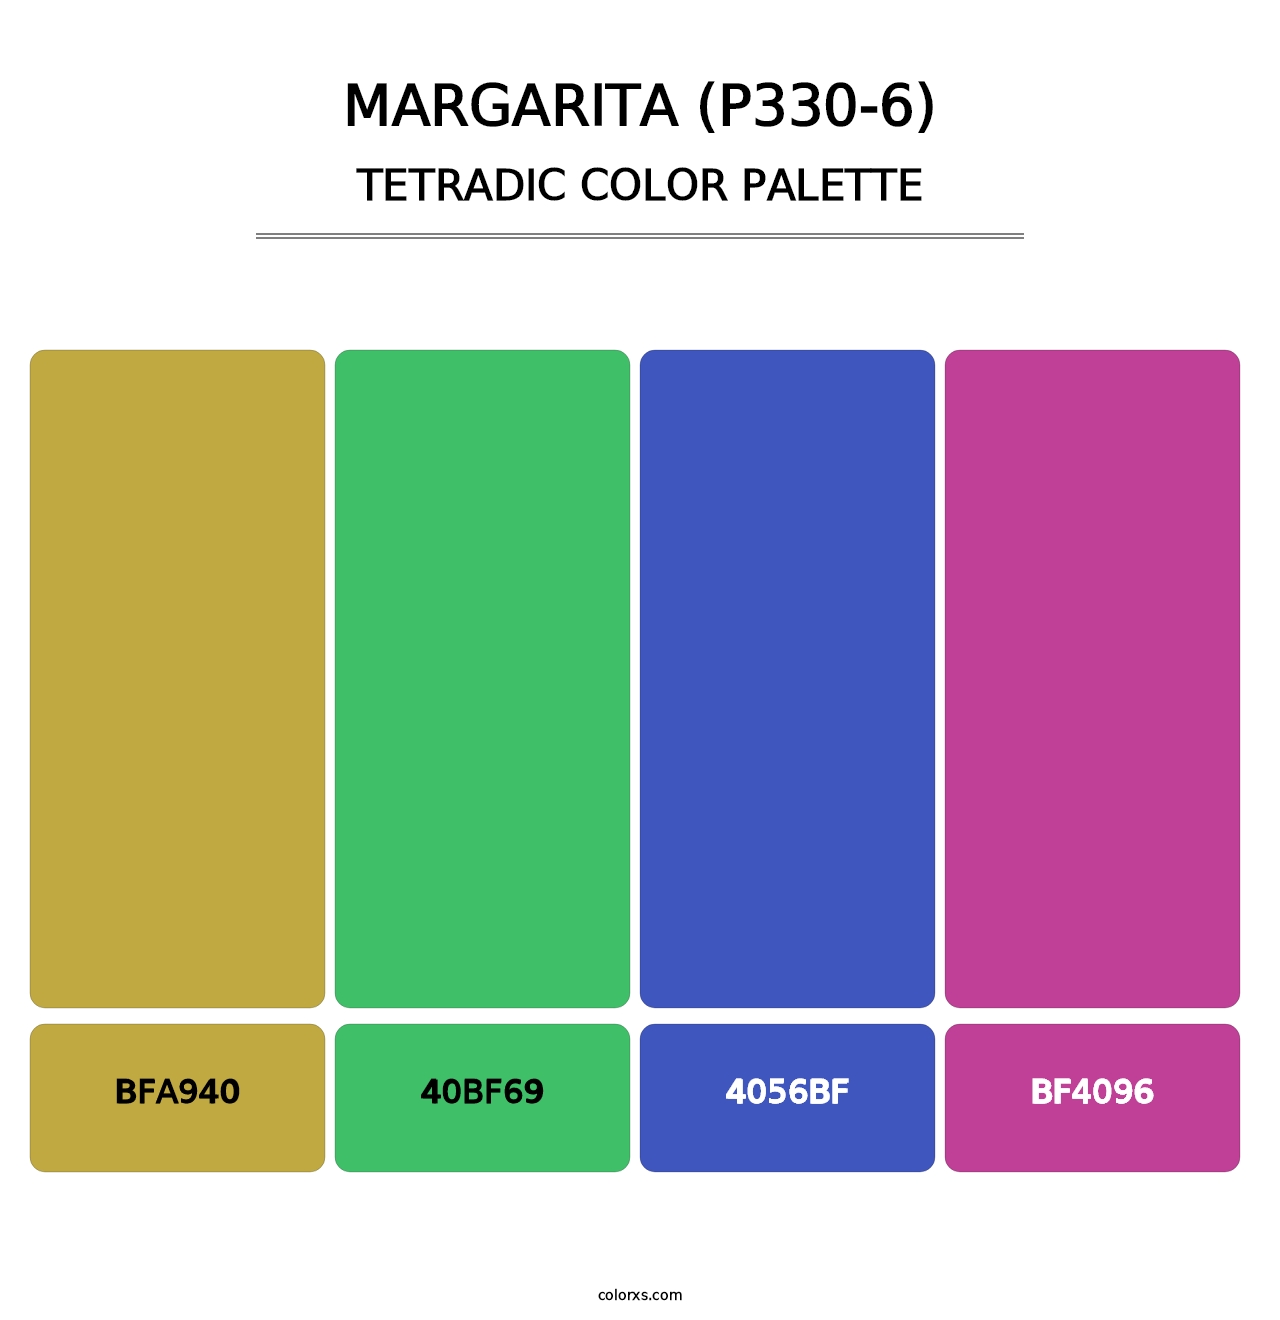 Margarita (P330-6) - Tetradic Color Palette